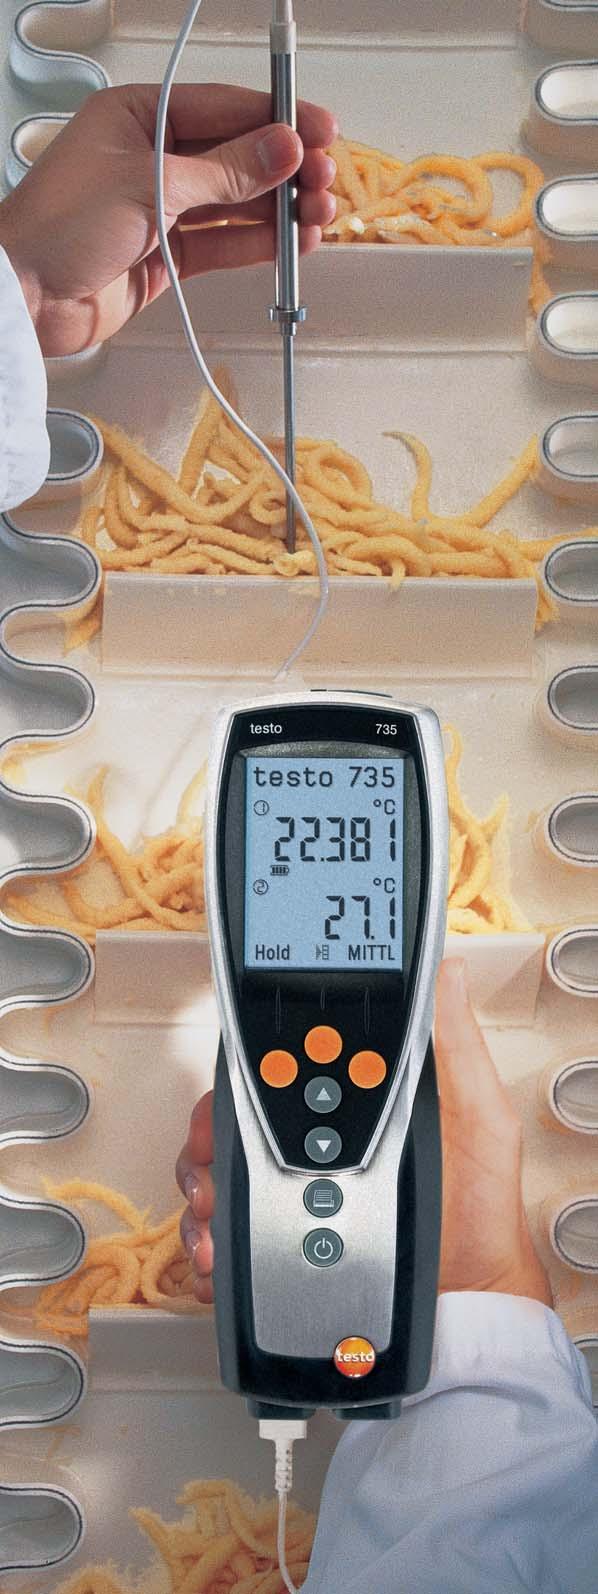 6 Hochpräzises Alarm- und Speicherthermometer mit Messortverwaltung Kontroll-Messungen an Lebensmitteln!